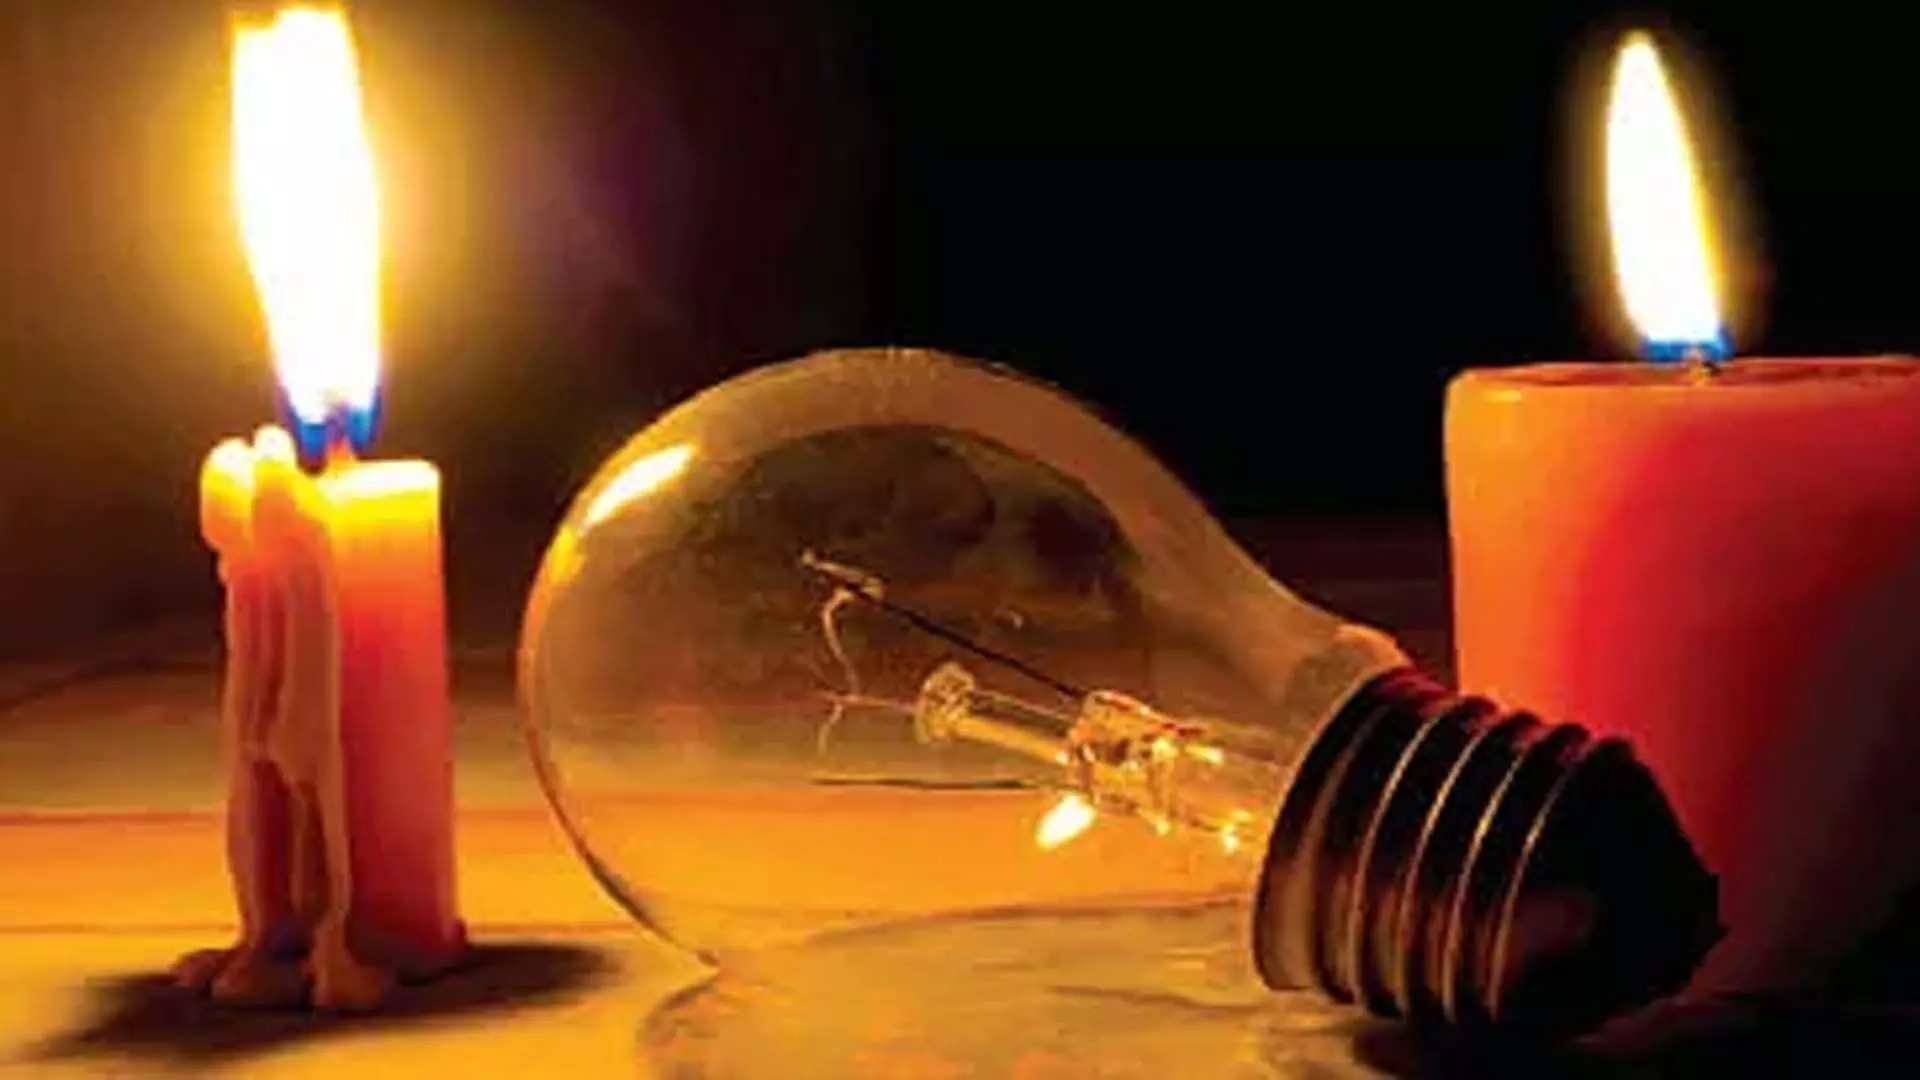 Power problems जम्मू के इलाकों में बिजली बंद